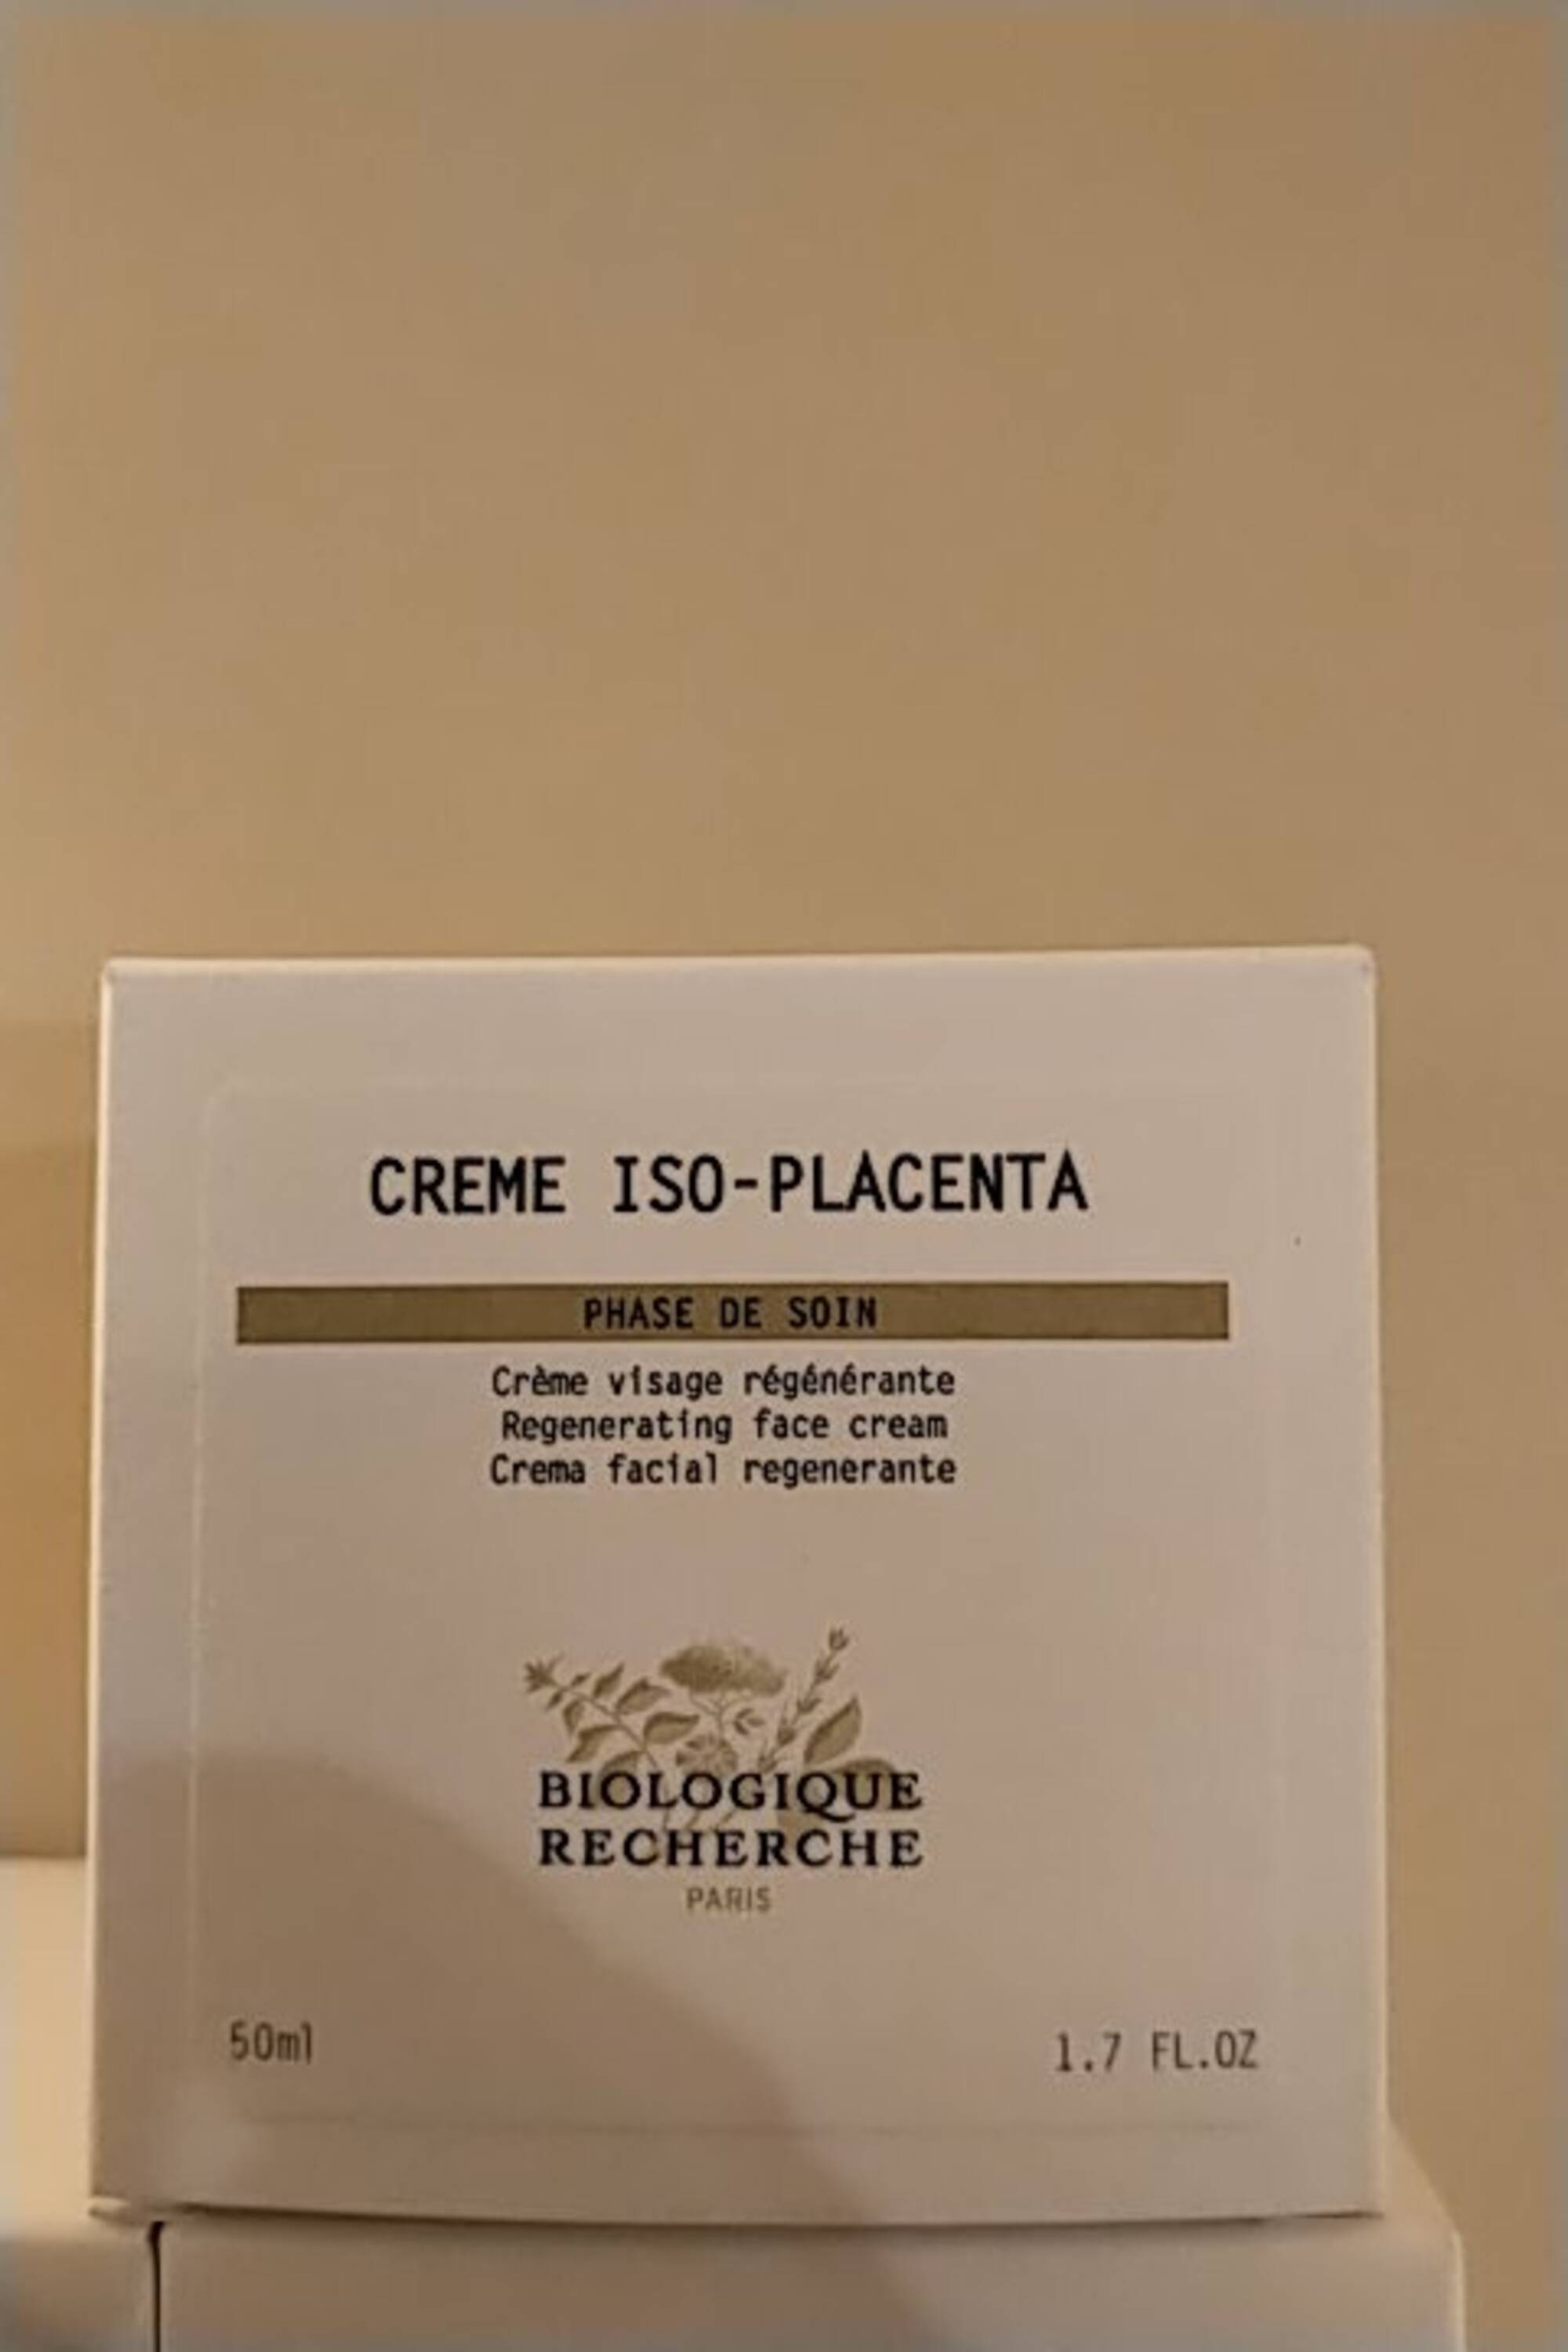 BIOLOGIQUE RECHERCHE - Crème iso-placenta - Crème visage régénérante